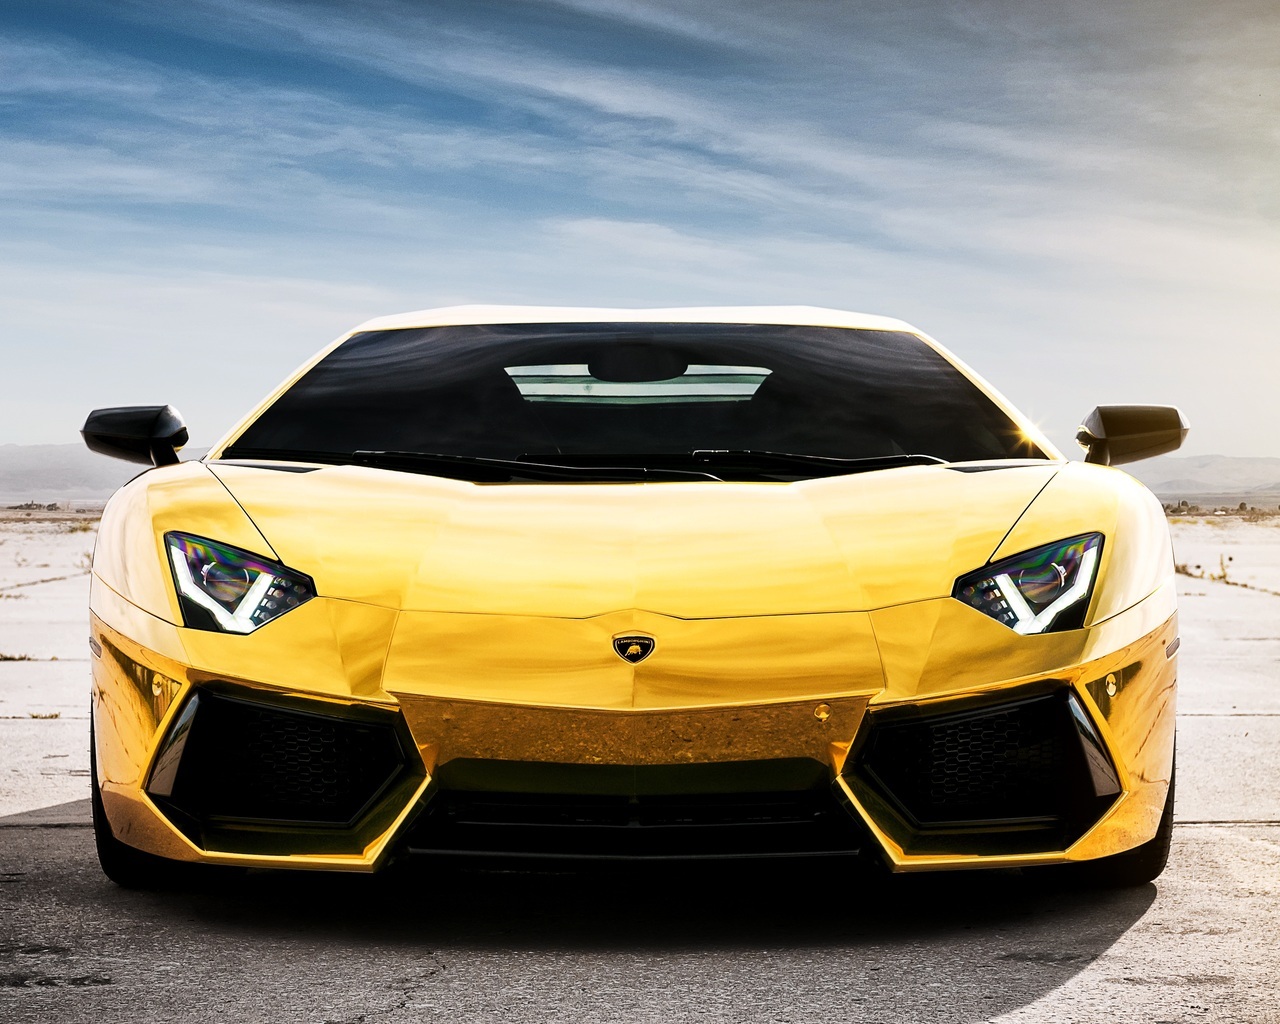 Mobile wallpaper: Transport, Auto, Lamborghini, 47014 download the picture  for free.